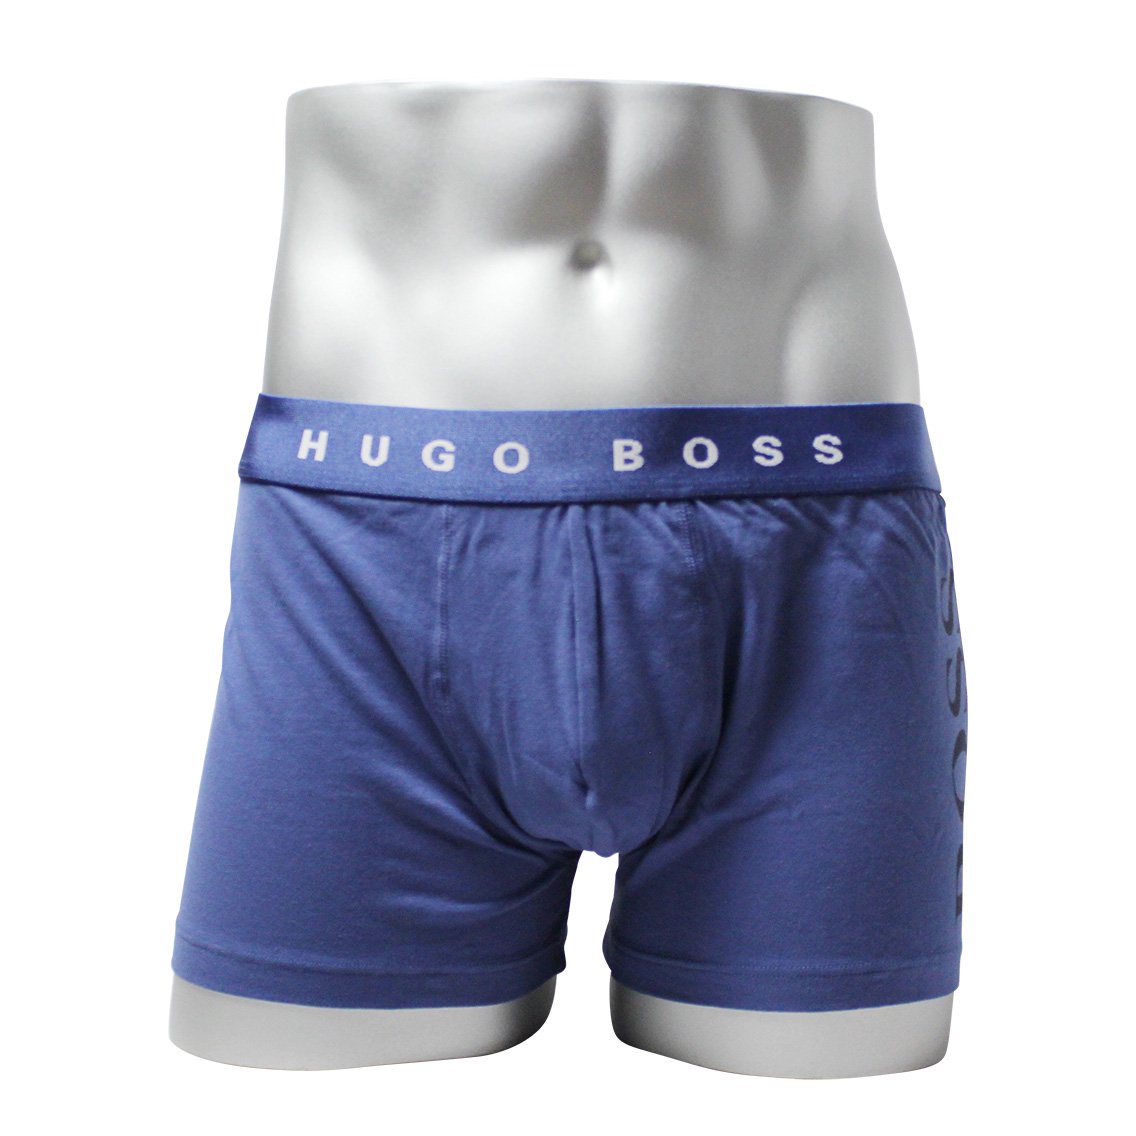 HUGO BOSS(ヒューゴ・ボス)[50238493-429]:ボクサーパンツ,男性下着,インナーの通販